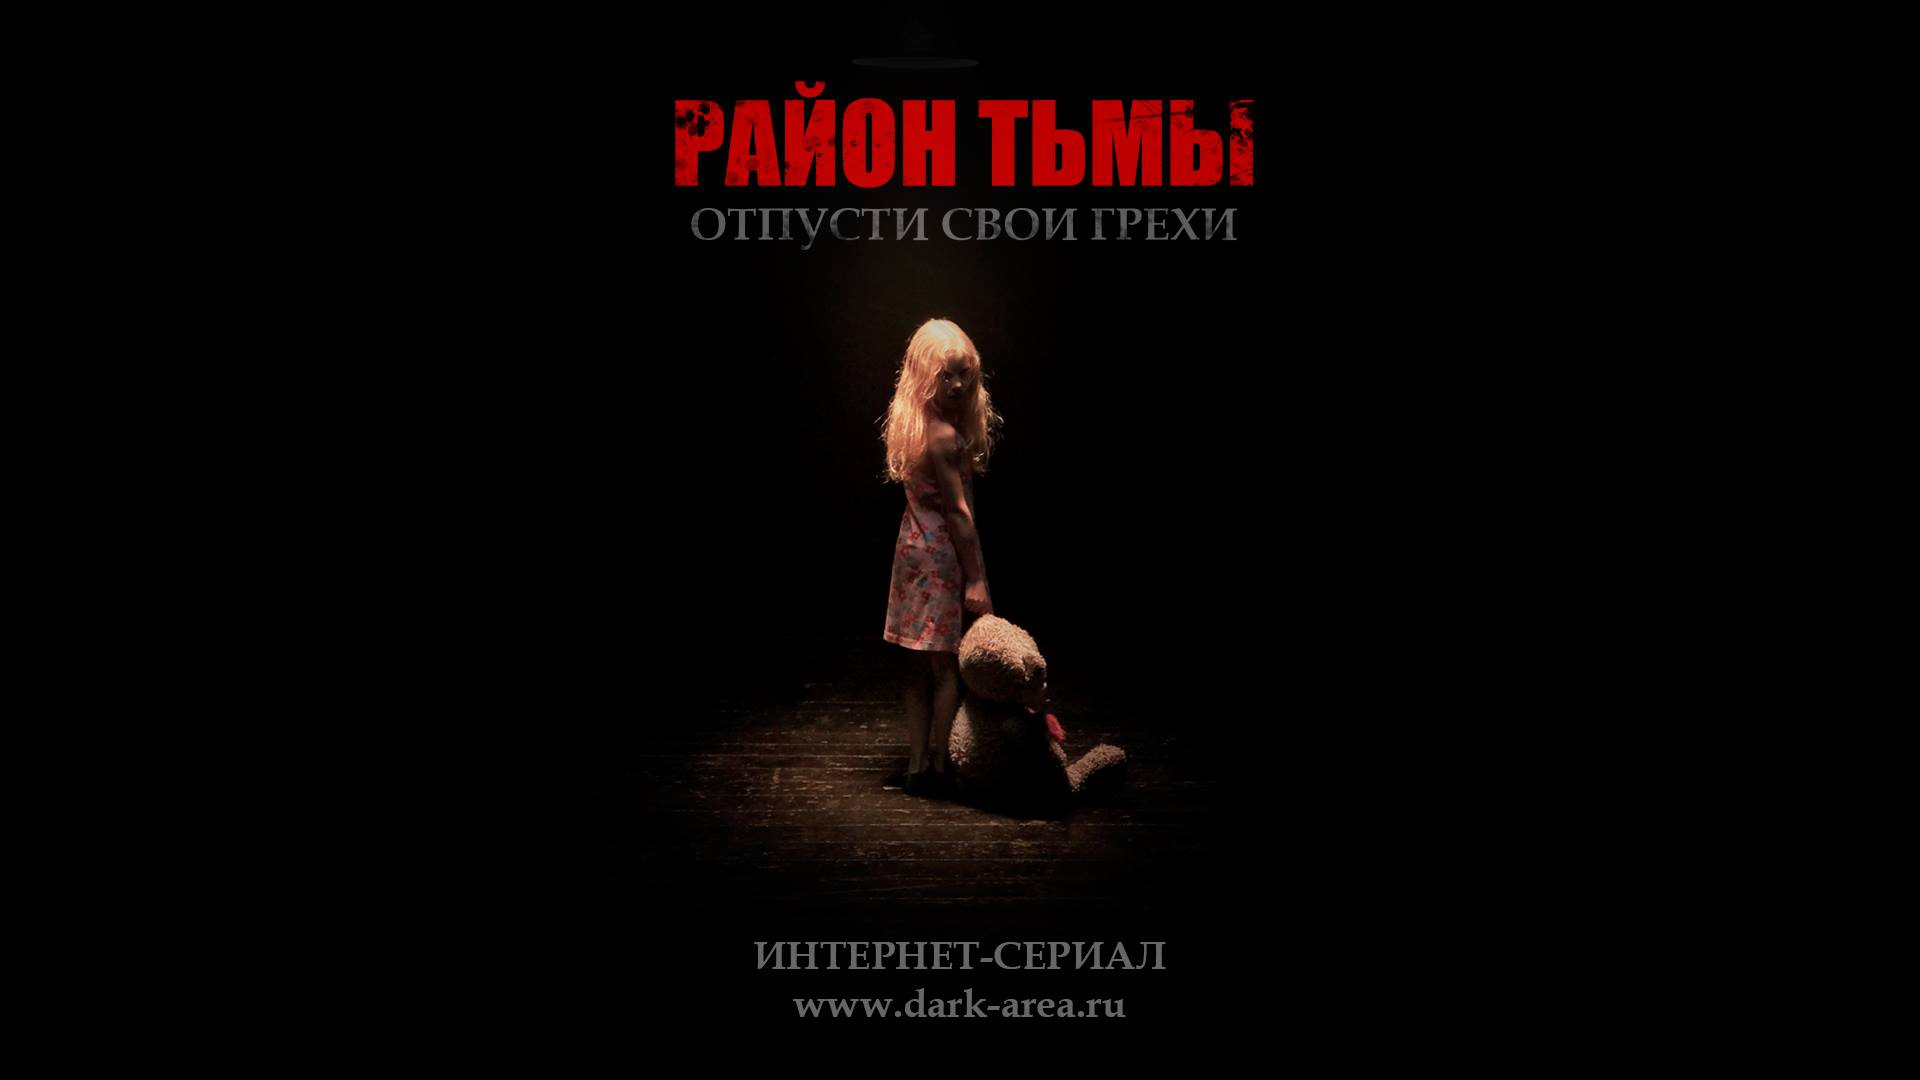 Все 13 серий первого русского хоррор-сериала в открытом доступе.